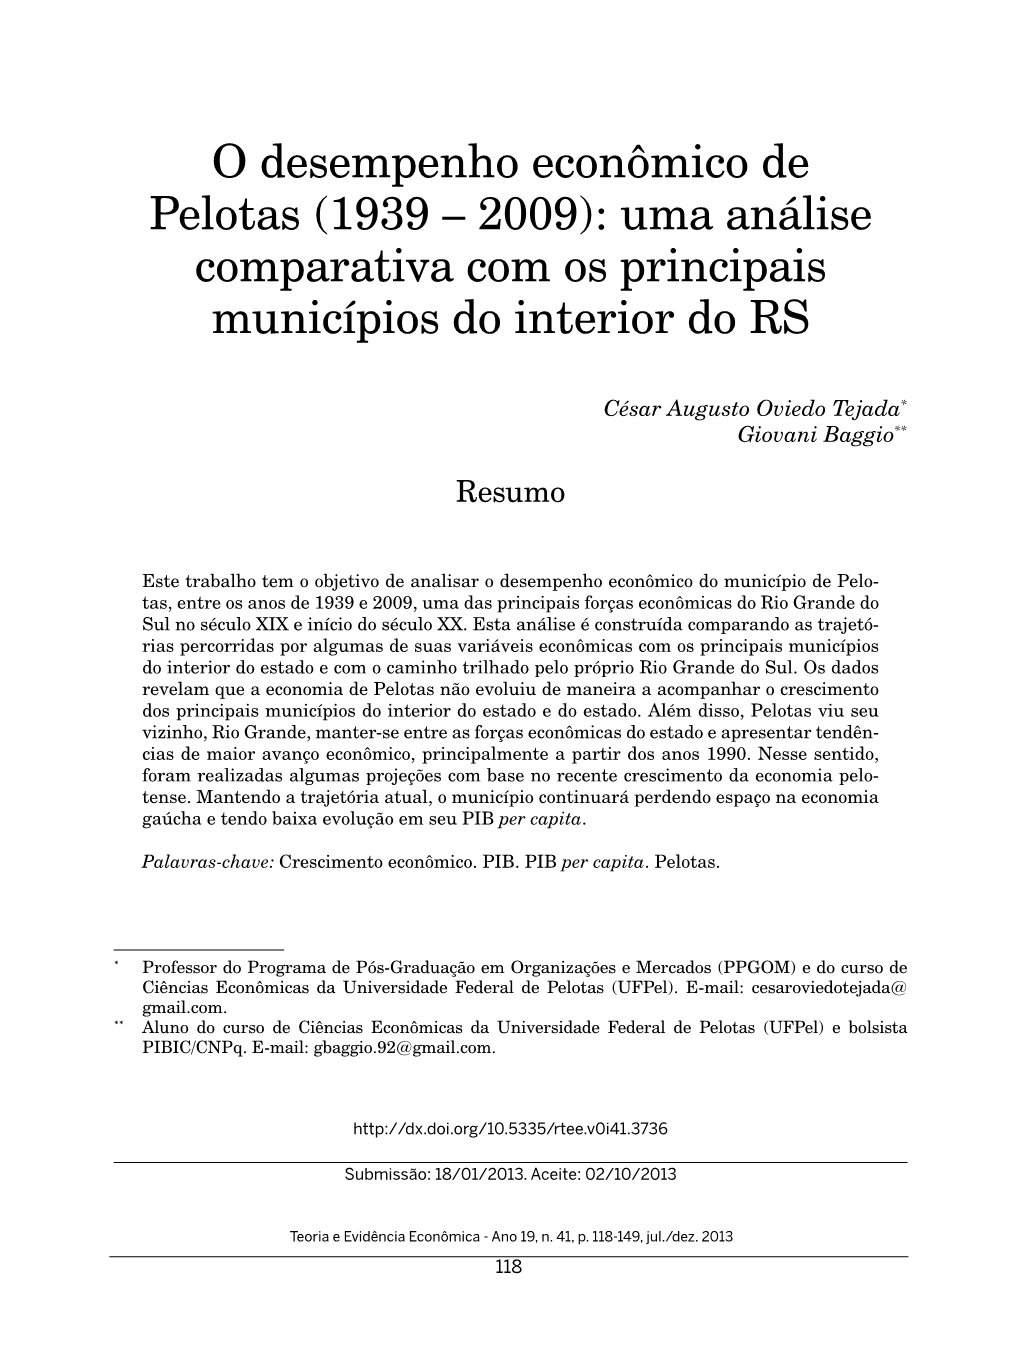 O Desempenho Econômico De Pelotas (1939 – 2009): Uma Análise Comparativa Com Os Principais Municípios Do Interior Do RS